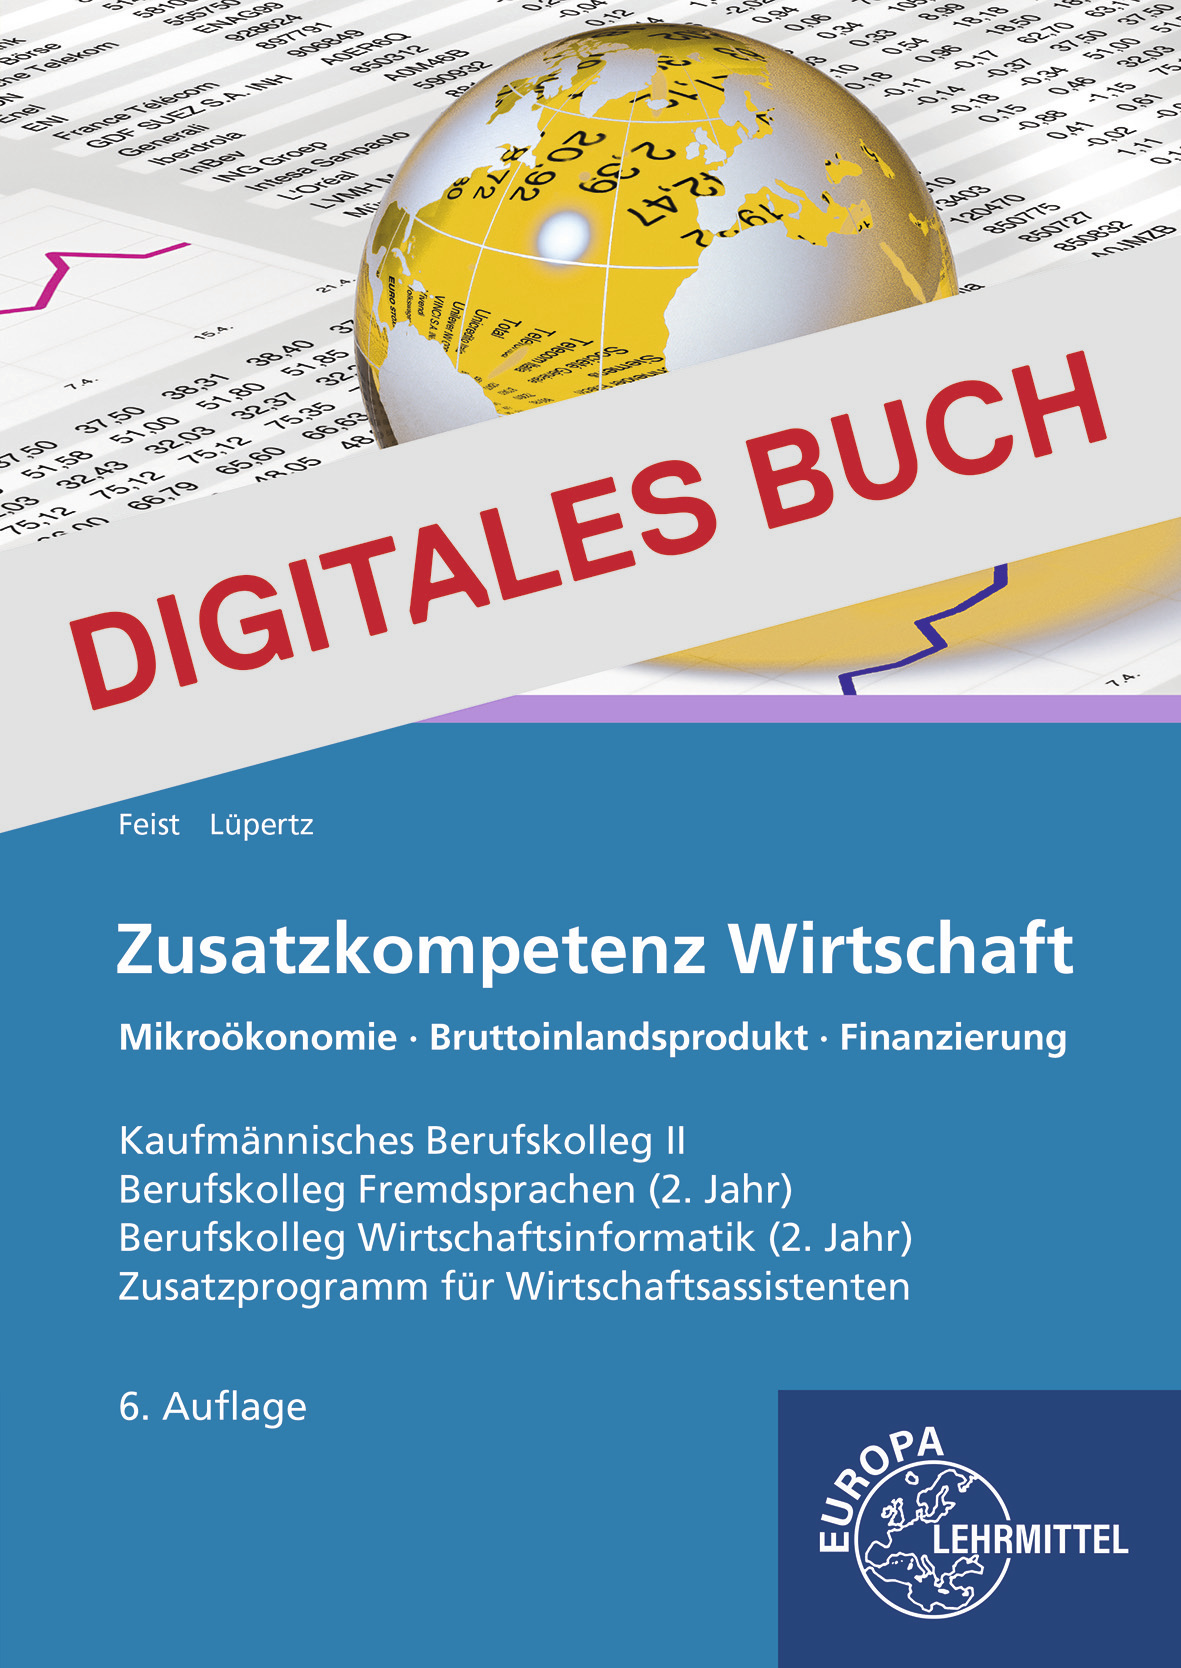 Zusatzkompetenz Wirtschaft - Digitales Buch